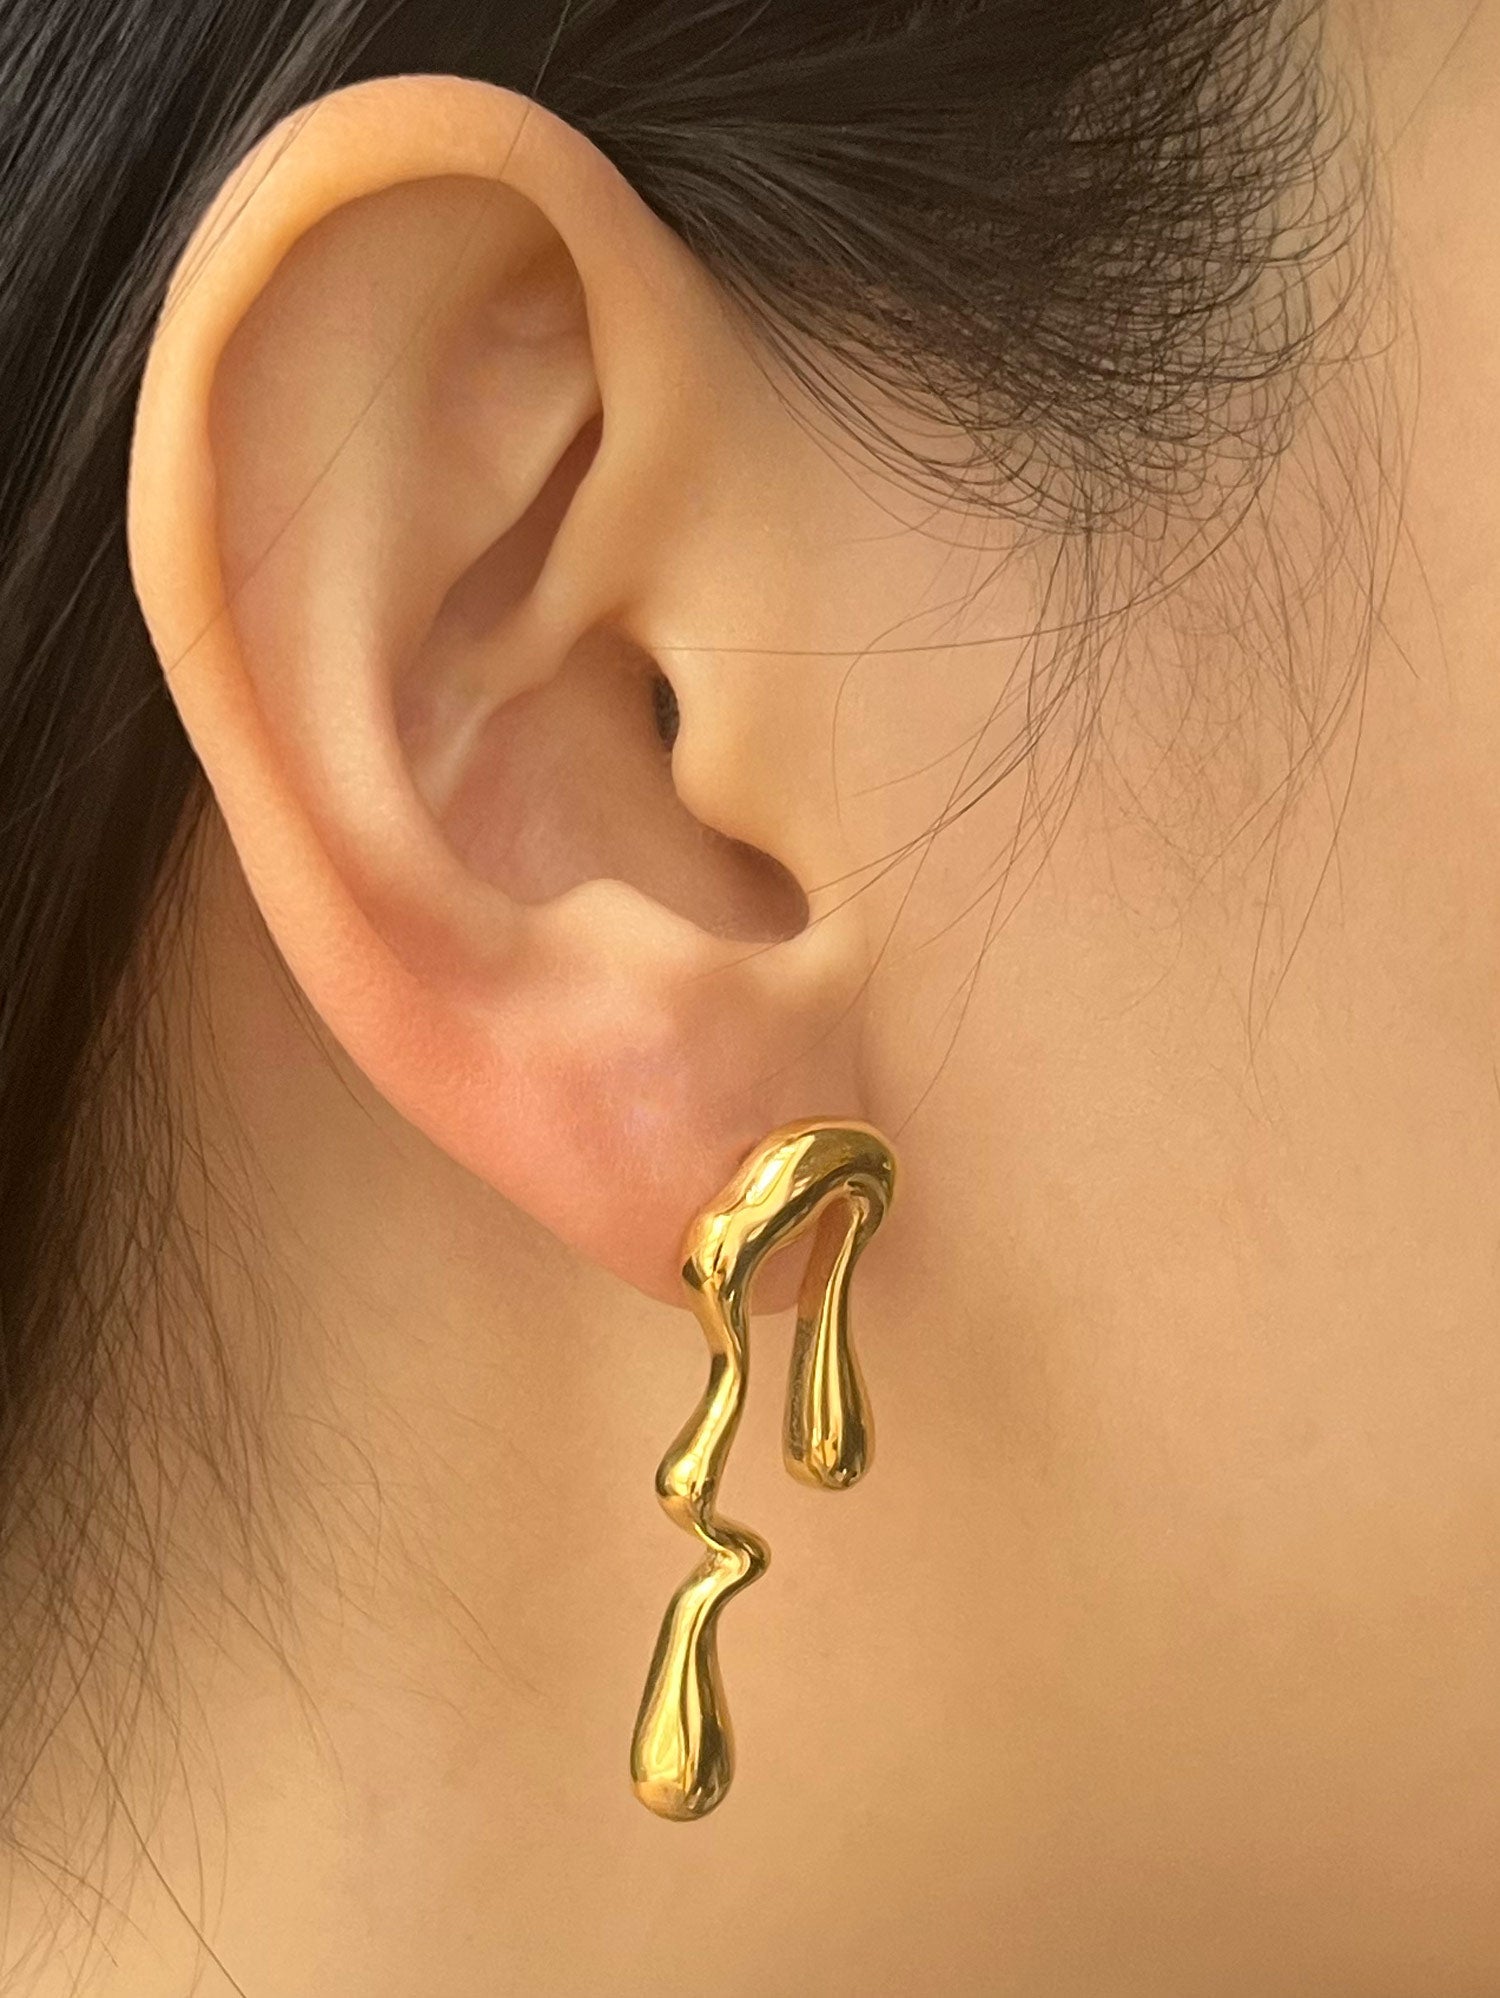 asym paint earrings model